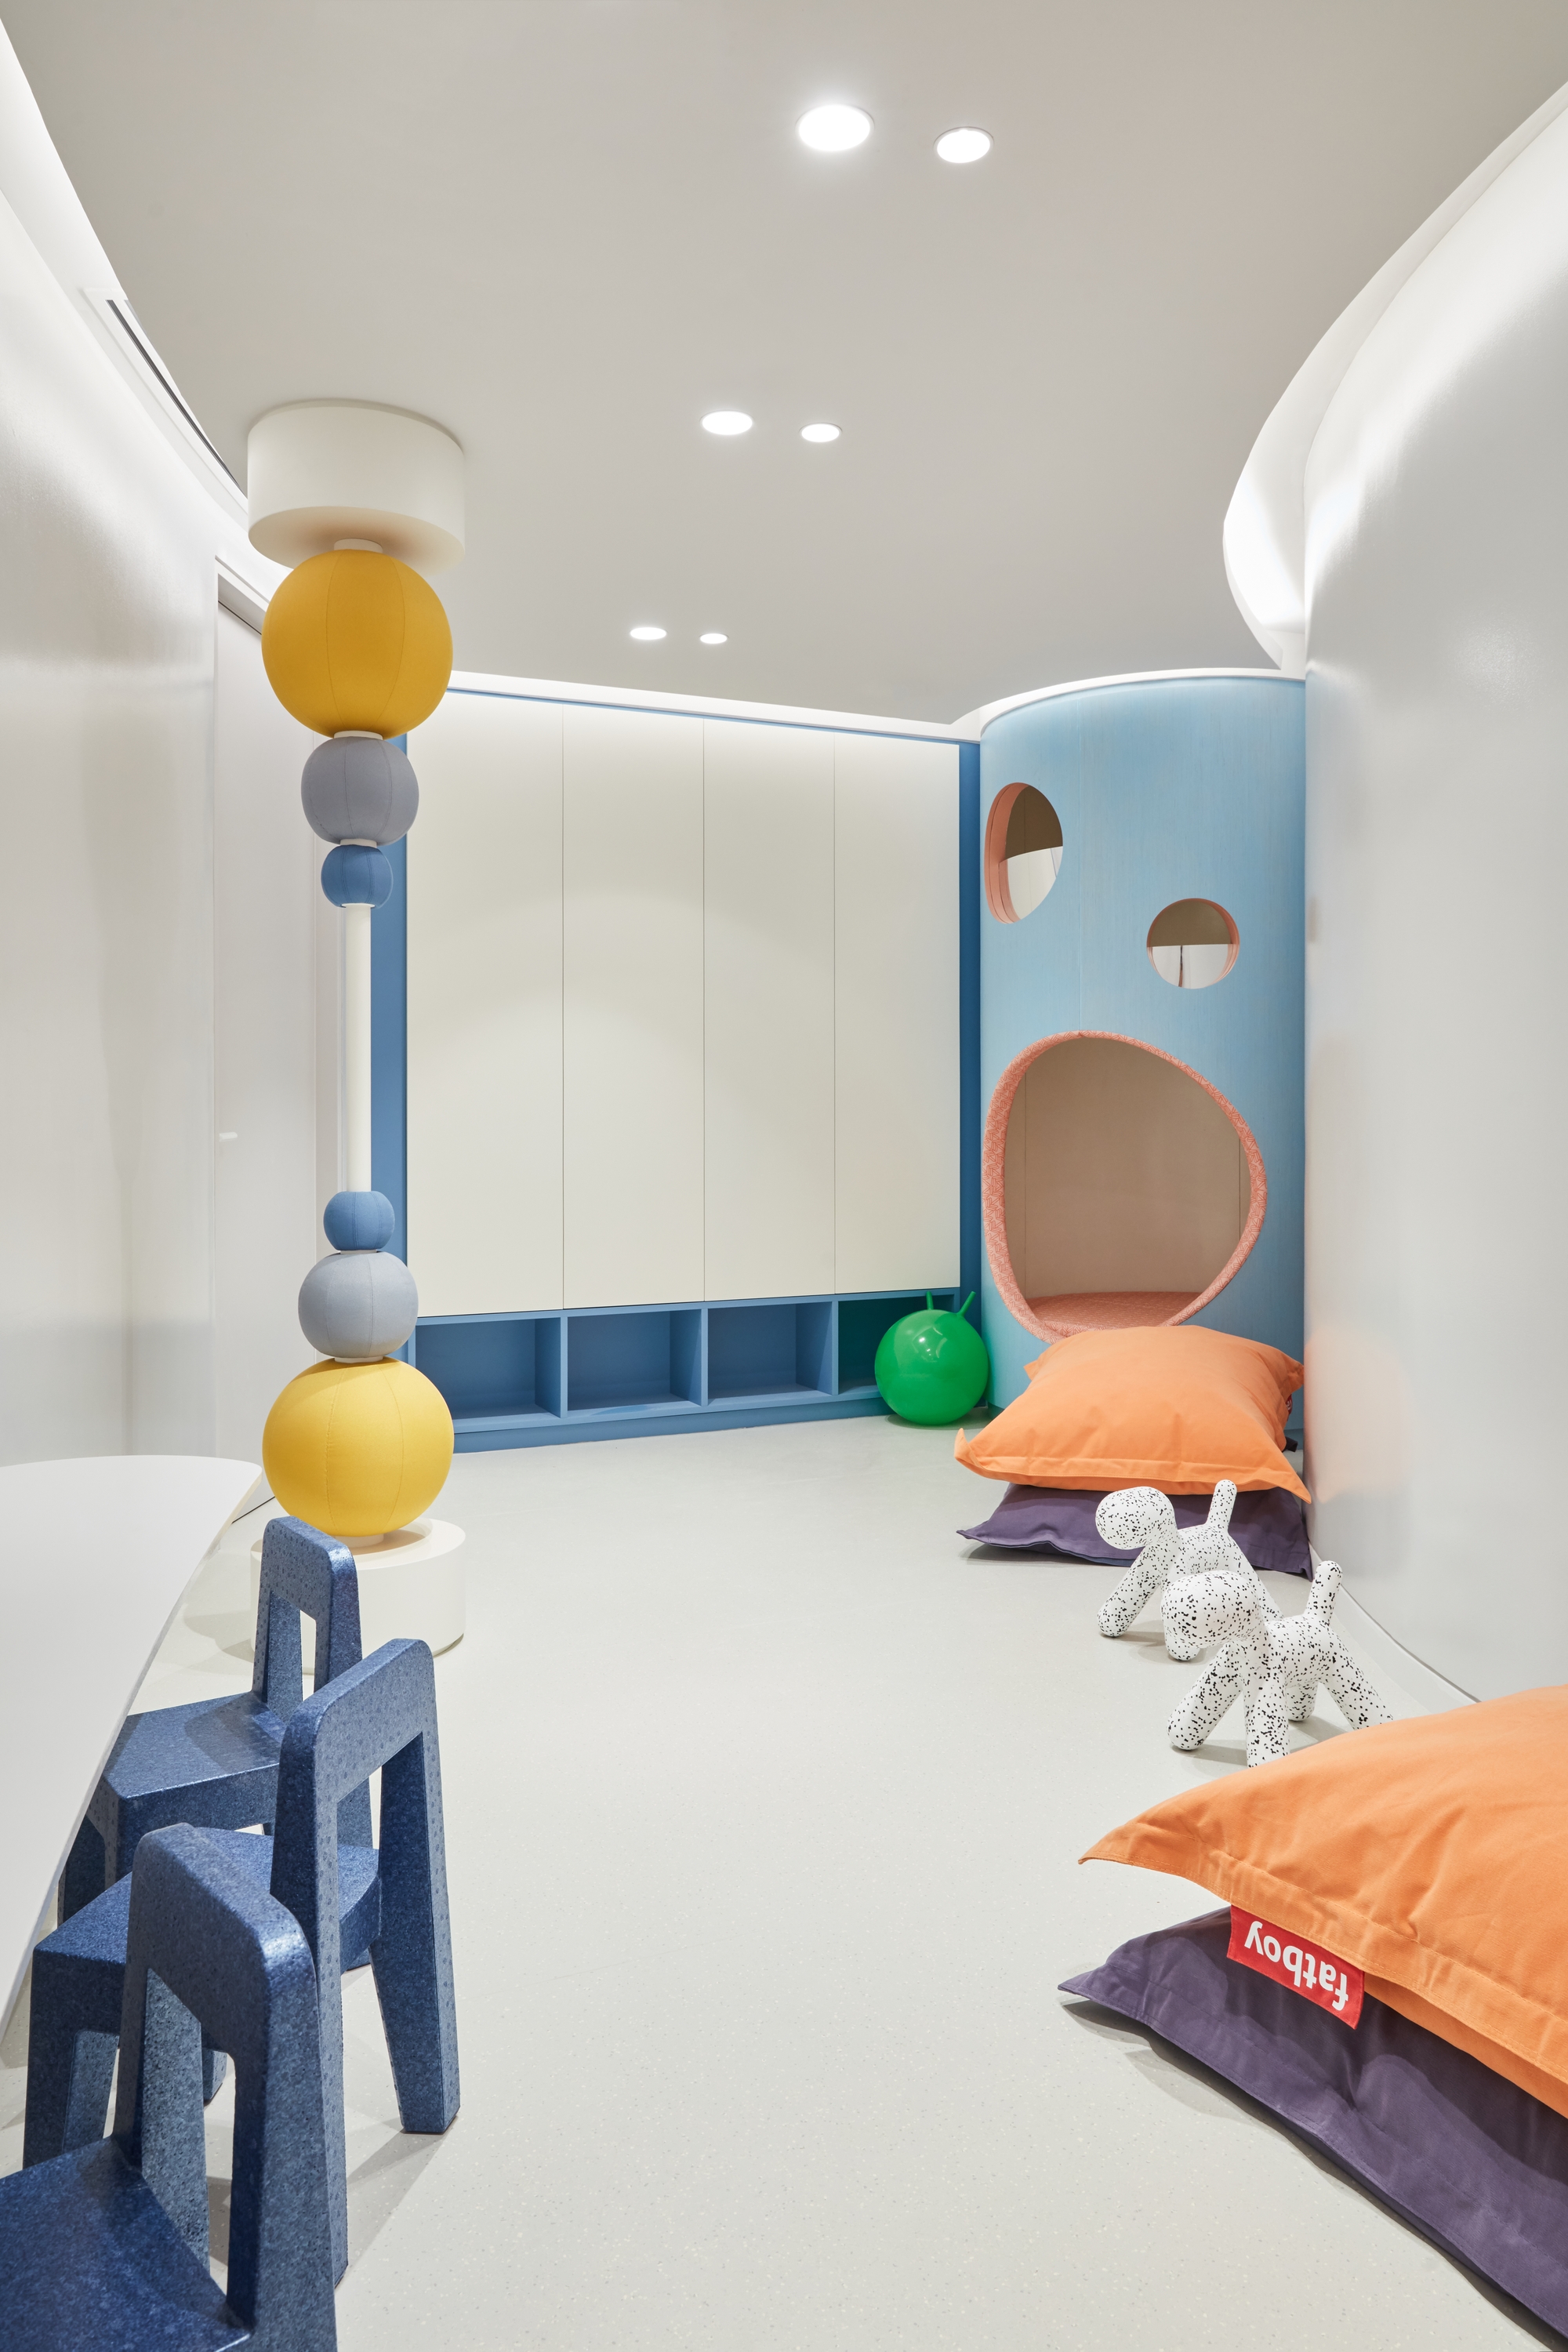 图片[12]|阿布扎比幼儿管理局|ART-Arrakis | 建筑室内设计的创新与灵感